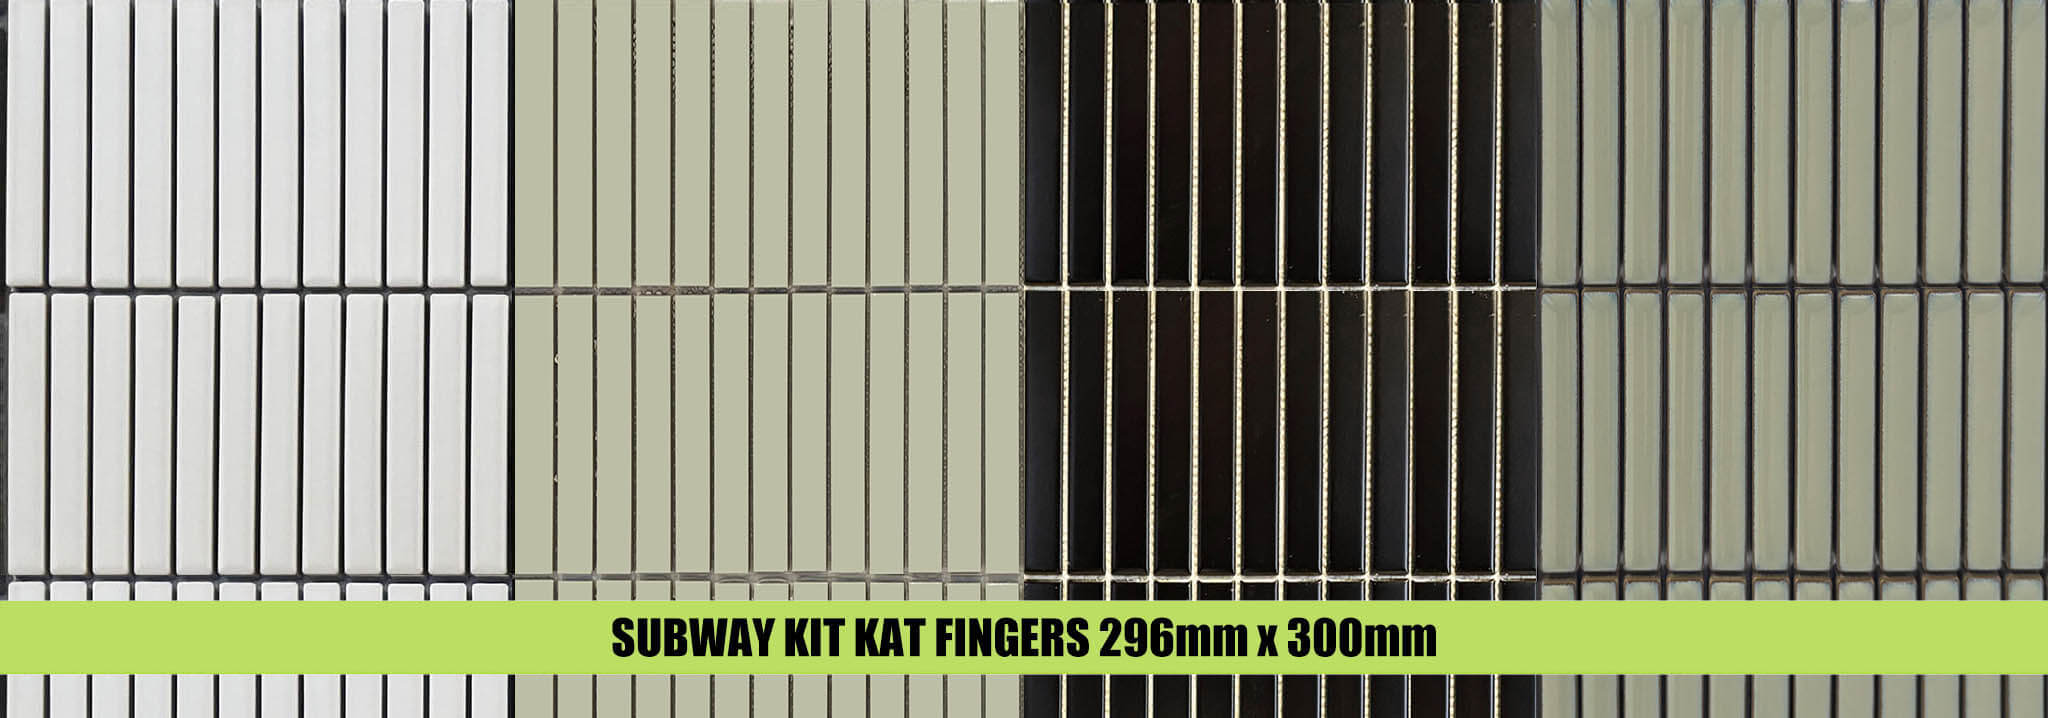 Kit Kat Subway Fingers